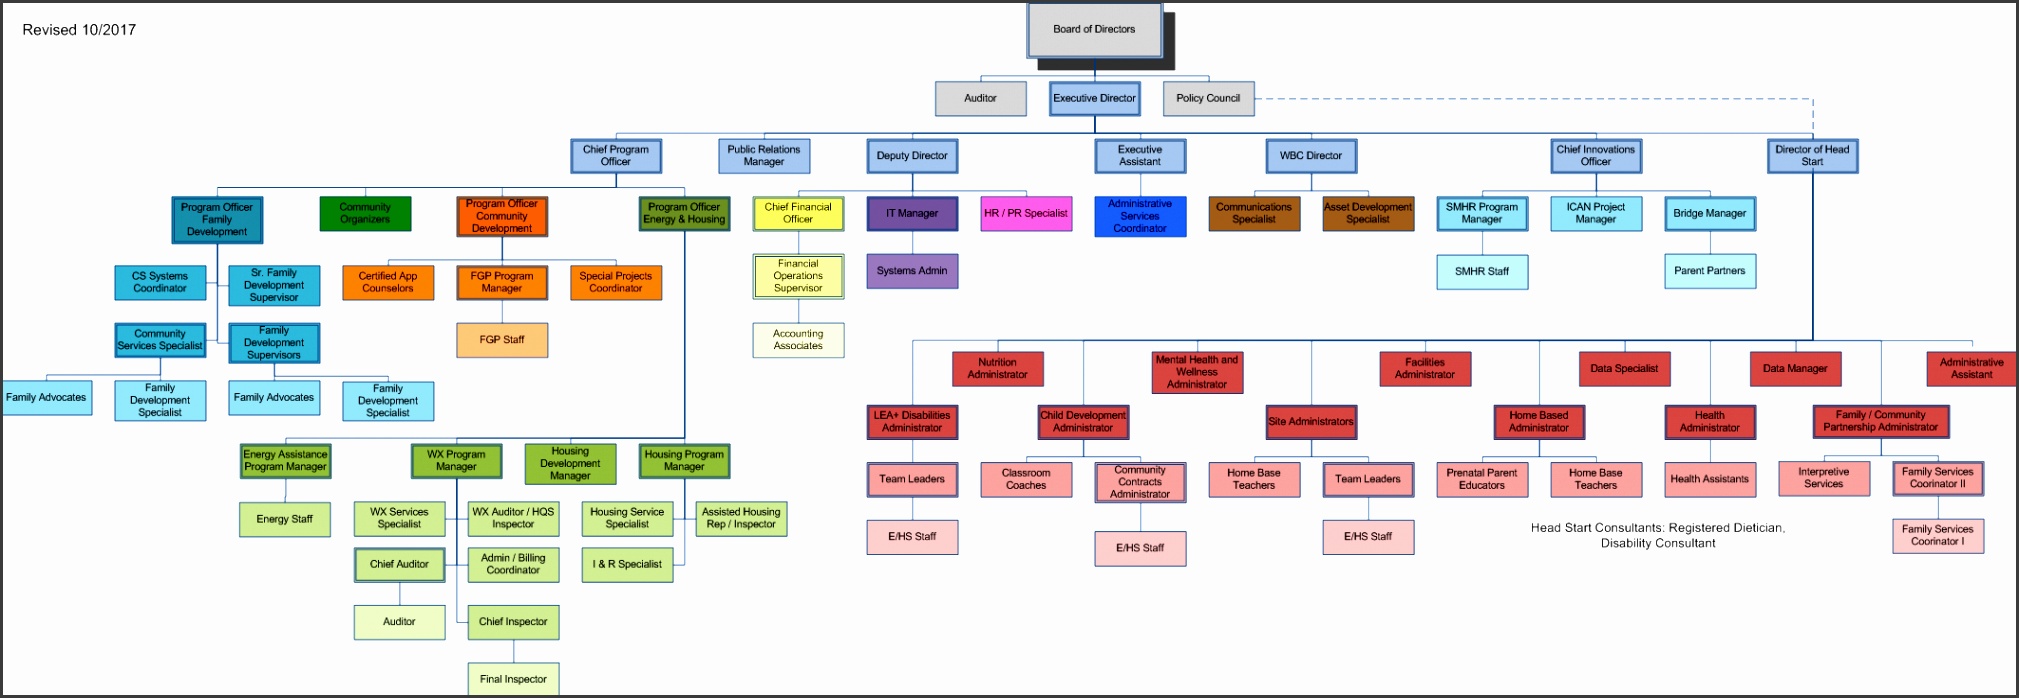 CMCA Organization Chart